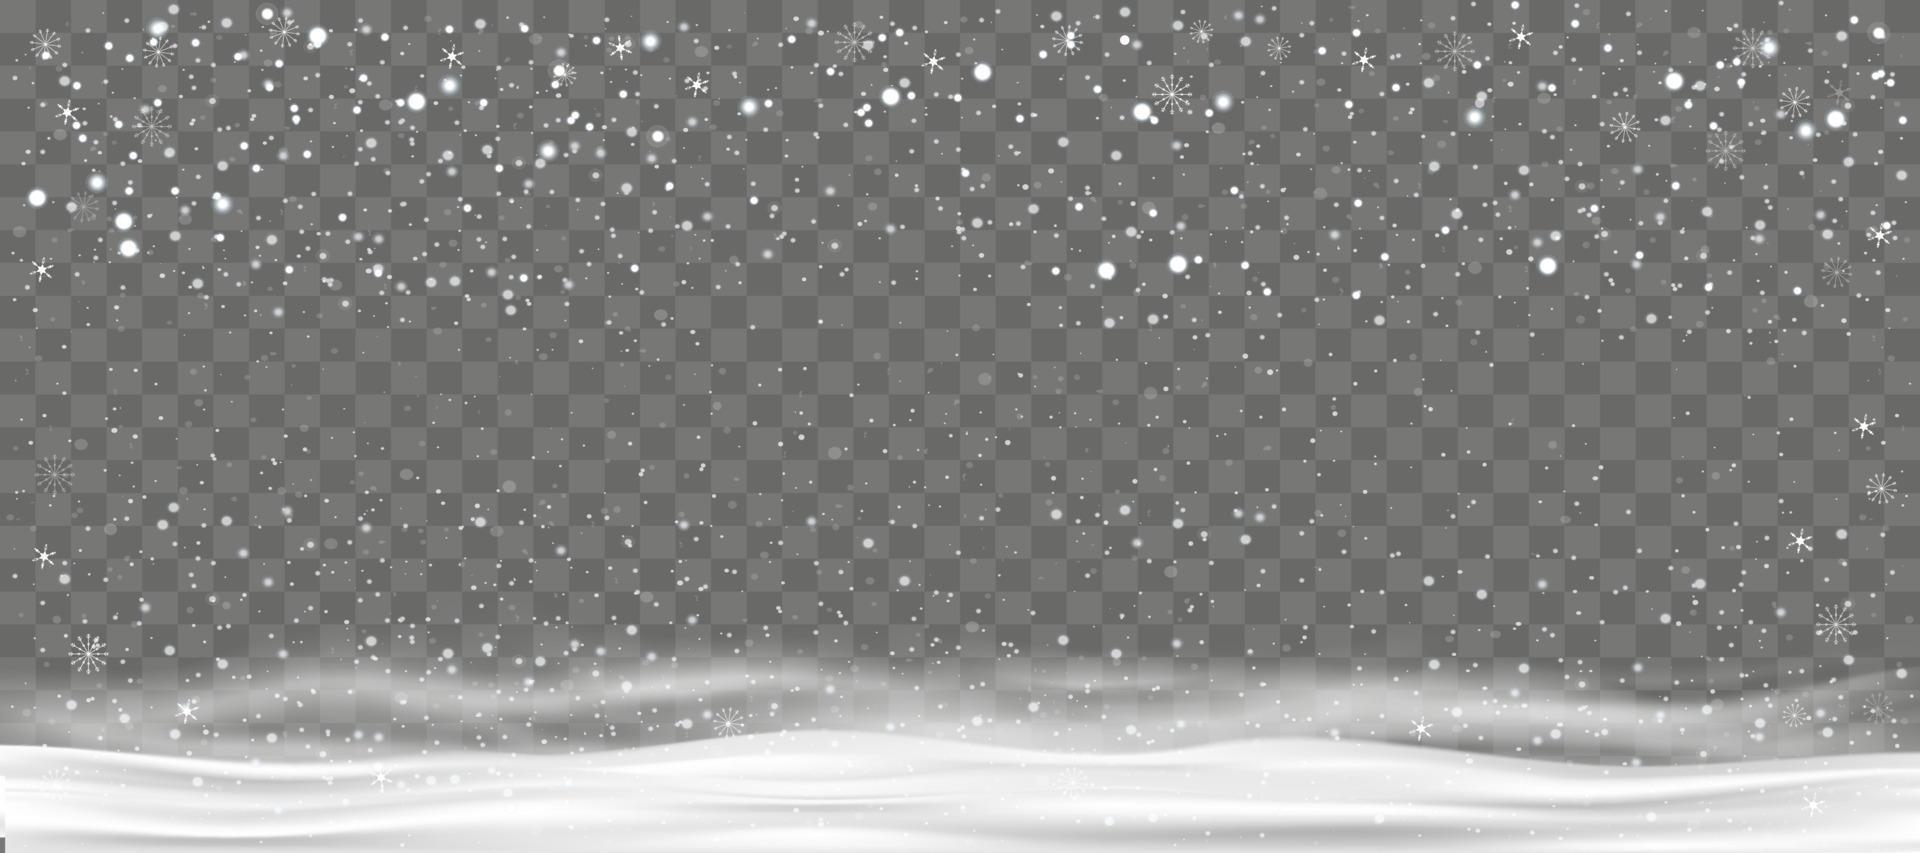 fondo de invierno con nieve cayendo sobre fondo transparente, pancarta de navidad vectorial con copos de nieve en diferentes formas en ventisqueros.fondo de vacaciones para feliz navidad y feliz año nuevo 2023 vector